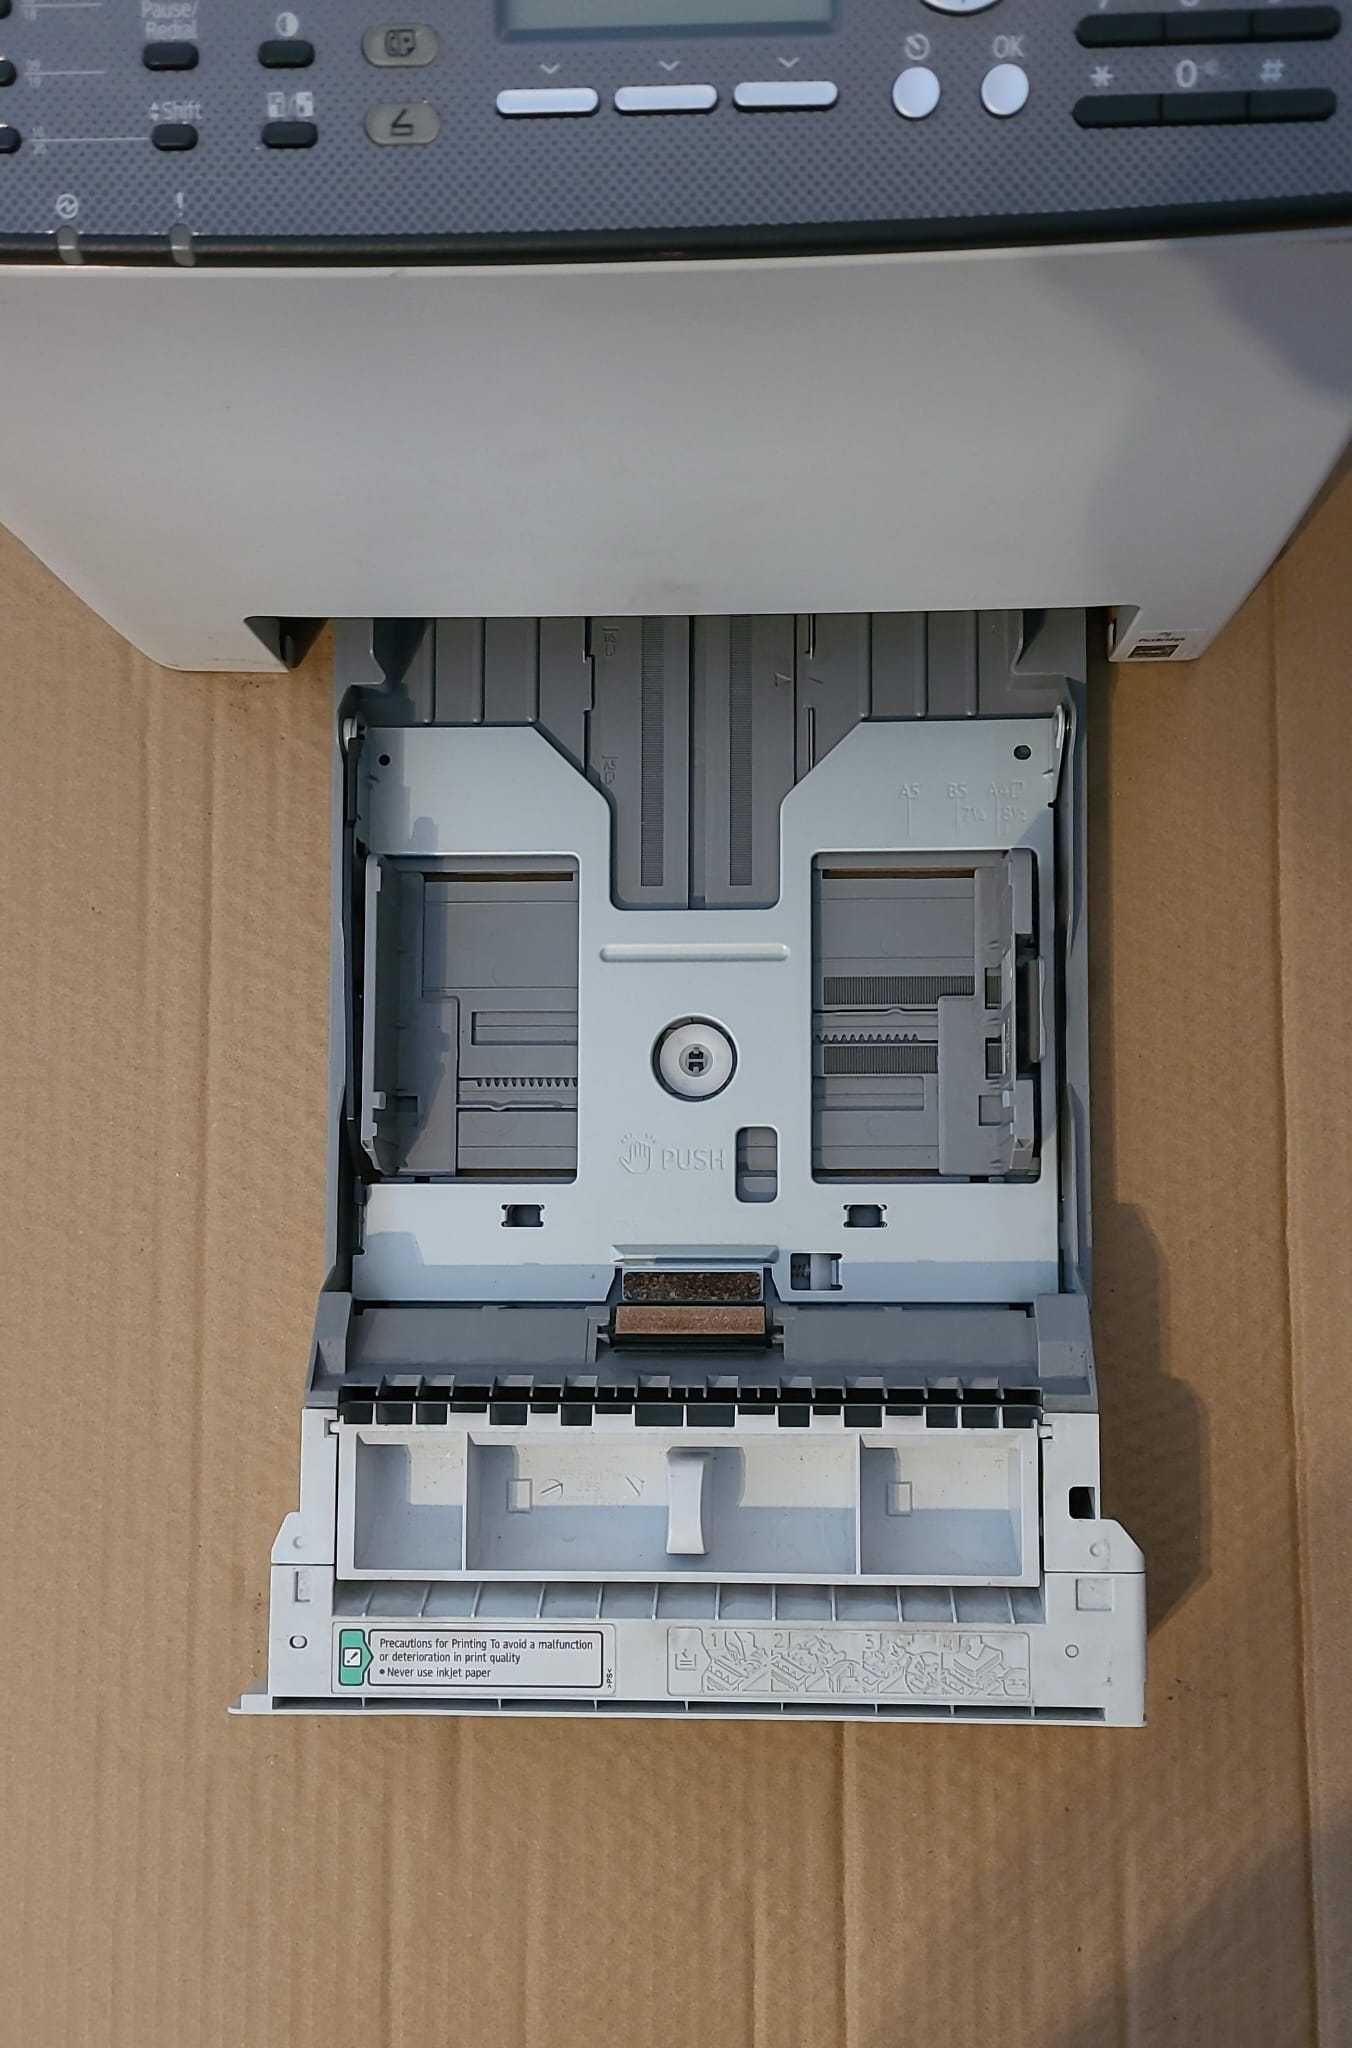 Imprimantă Ricoh SP c250sf